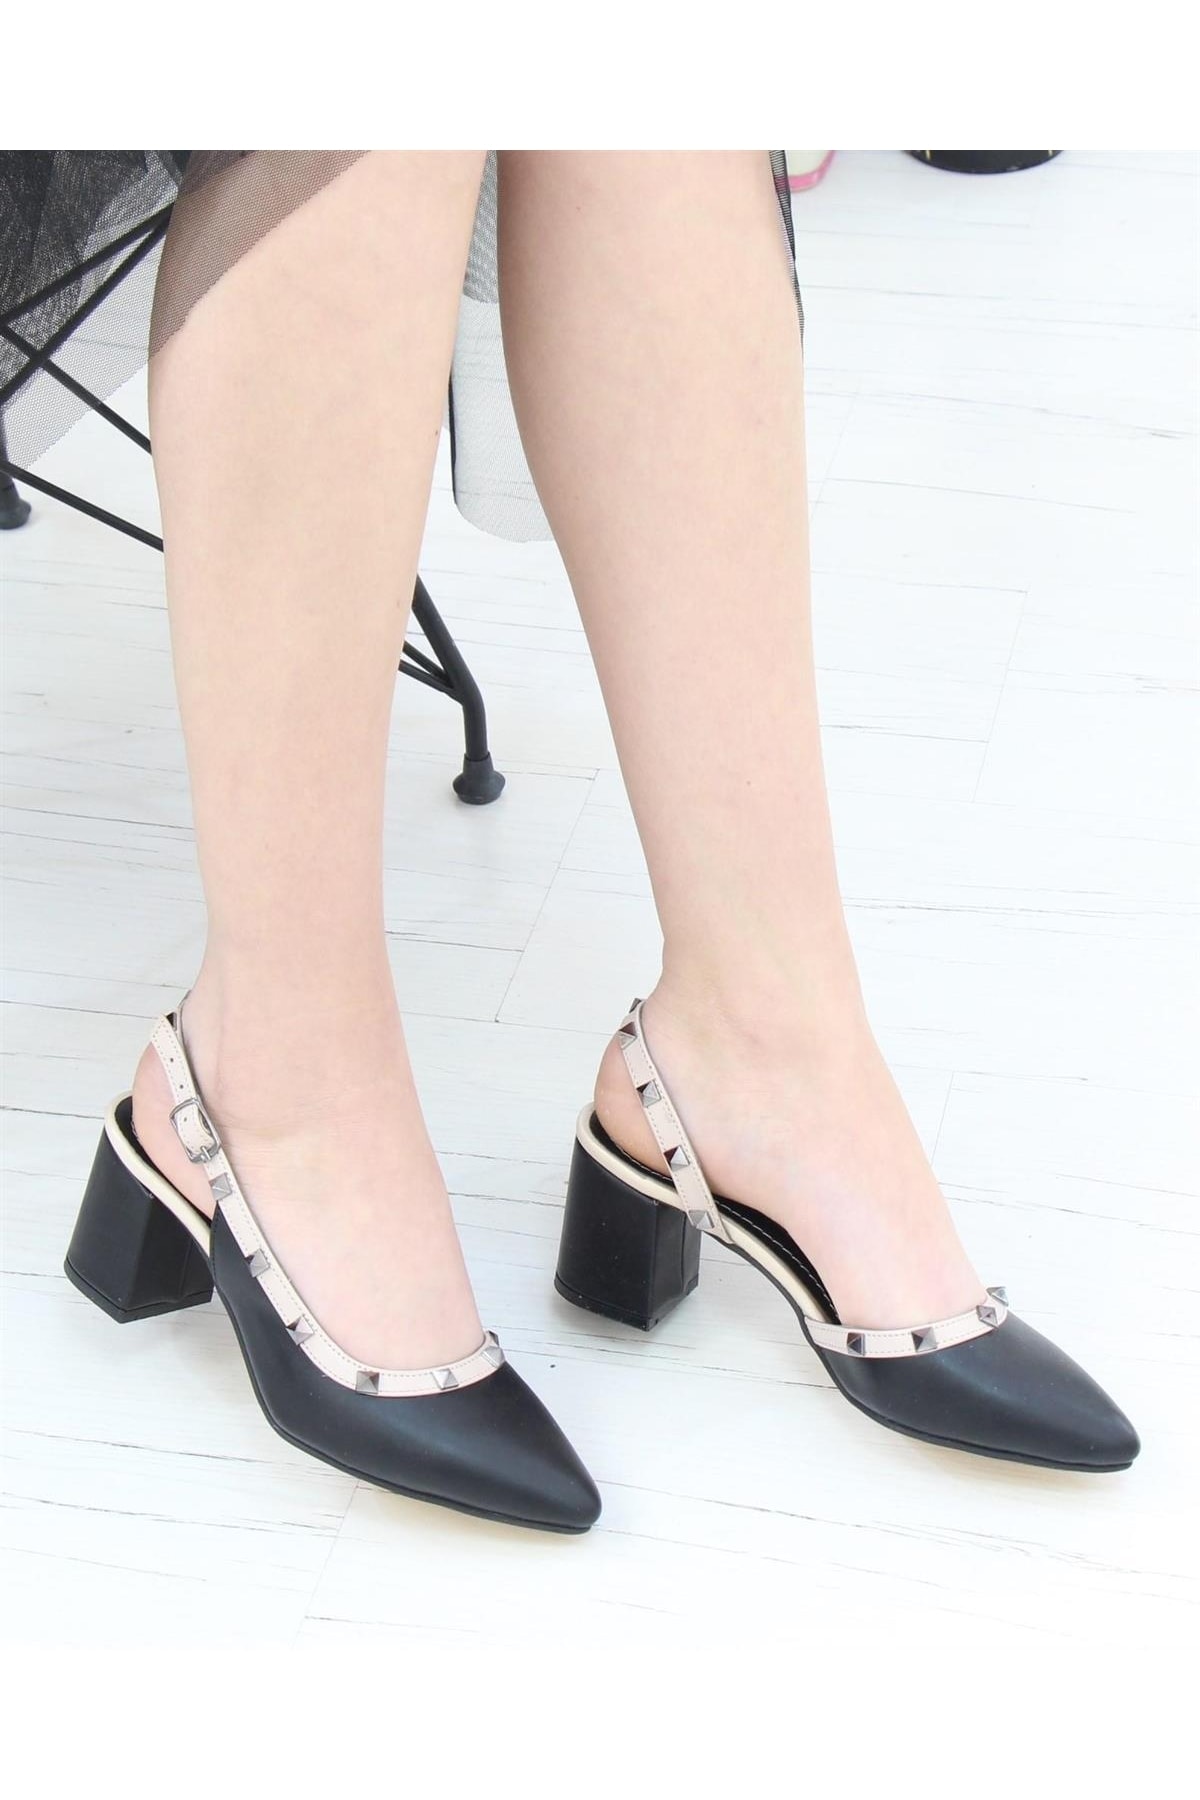 Nesil Shoes Rica 225 Siyah Topuklu Yazlık Altın Troplu Kadın Sandalet VB9656